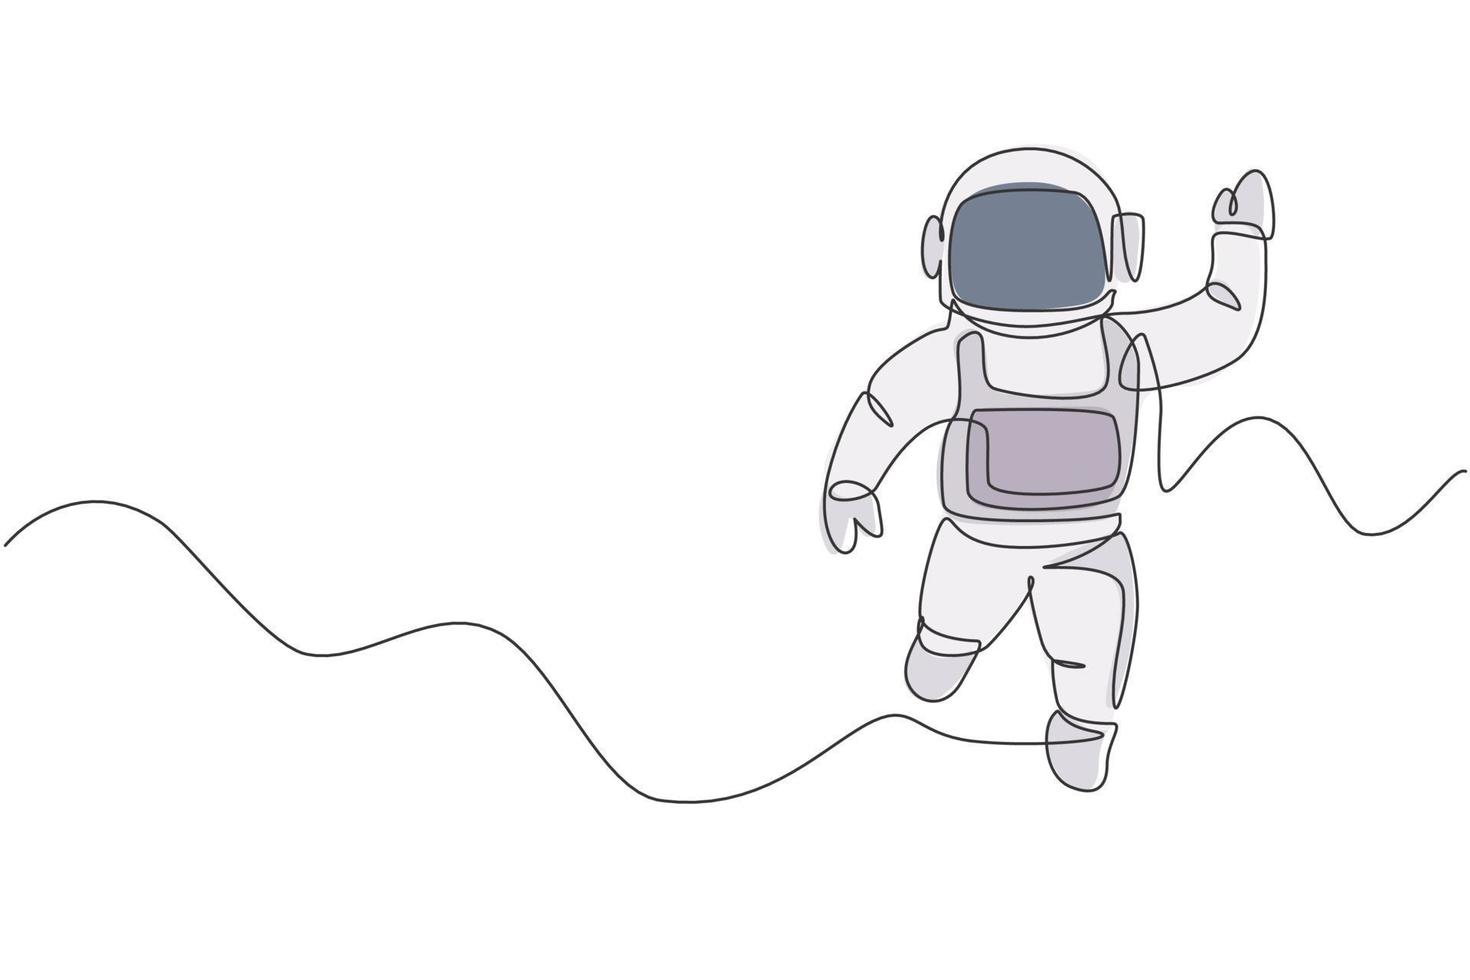 dibujo de una sola línea continua del joven científico cosmonauta que descubre el universo de la caminata espacial en estilo vintage. concepto de viajero cósmico astronauta. Ilustración de vector de diseño gráfico de dibujo de una línea de moda